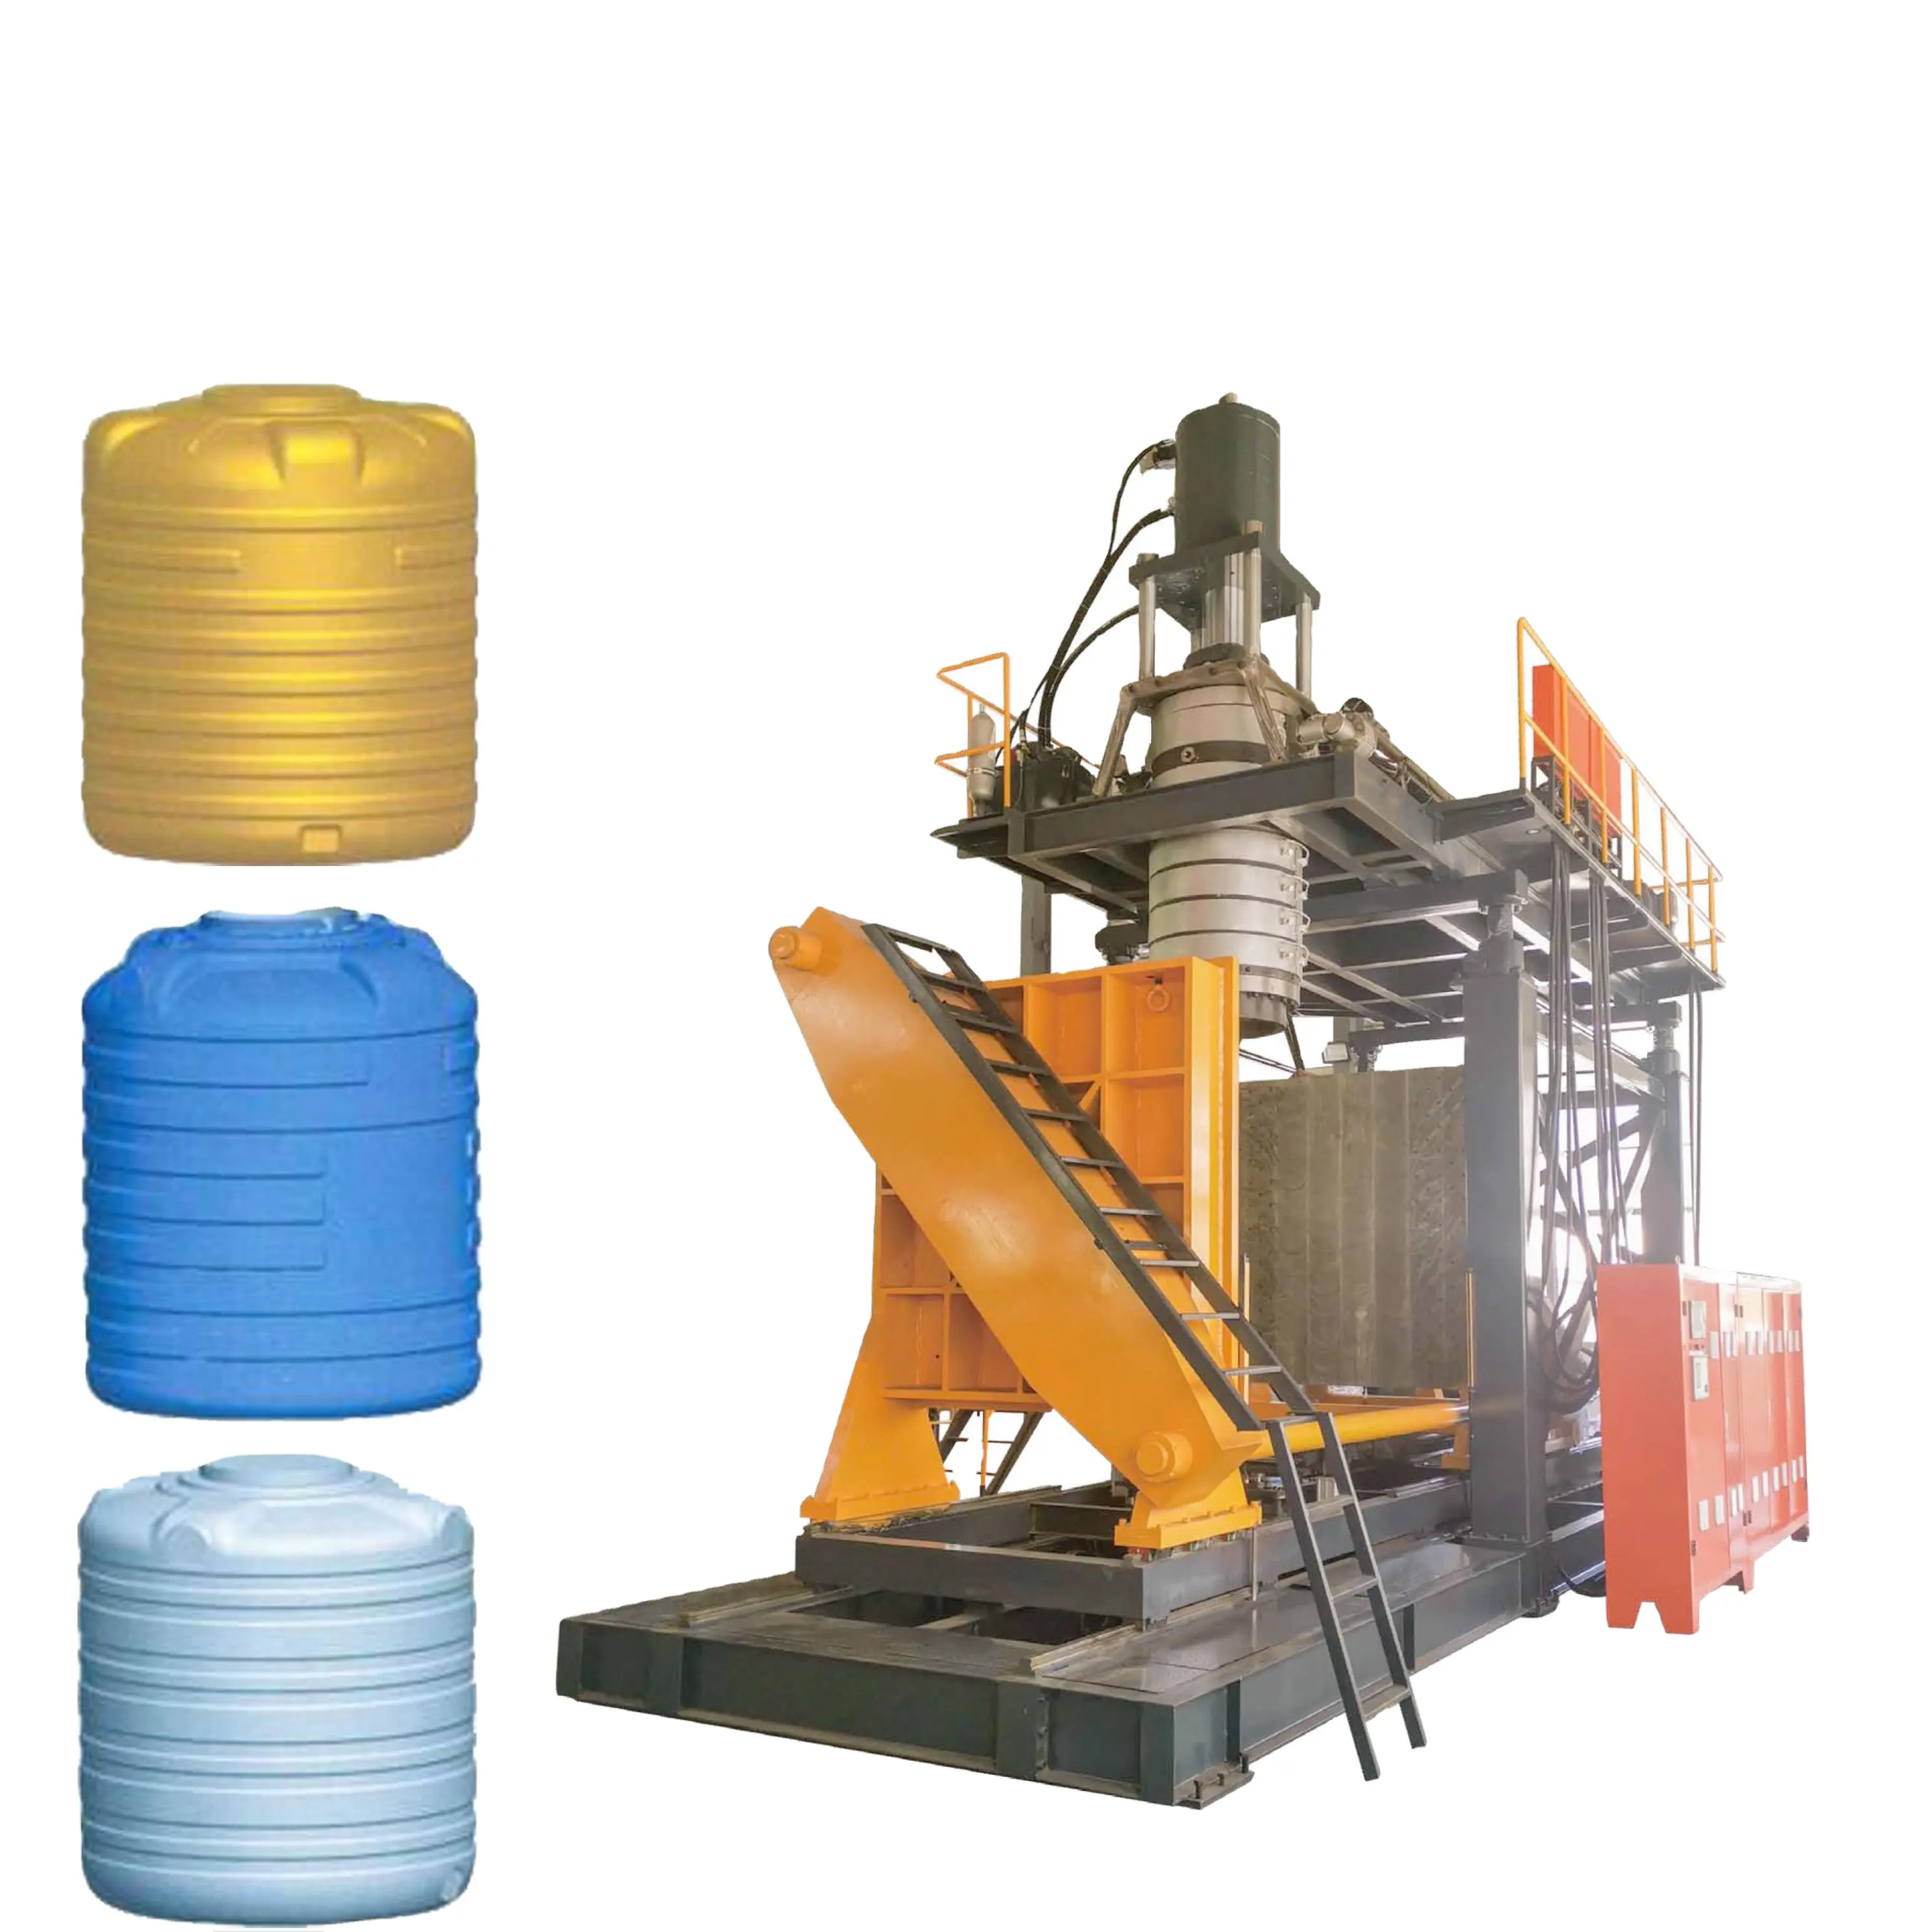 Plastik su depolama tankı üretim hattı 1000L HDPE ekstrüzyon üflemeli kalıplama makinesi fiyat